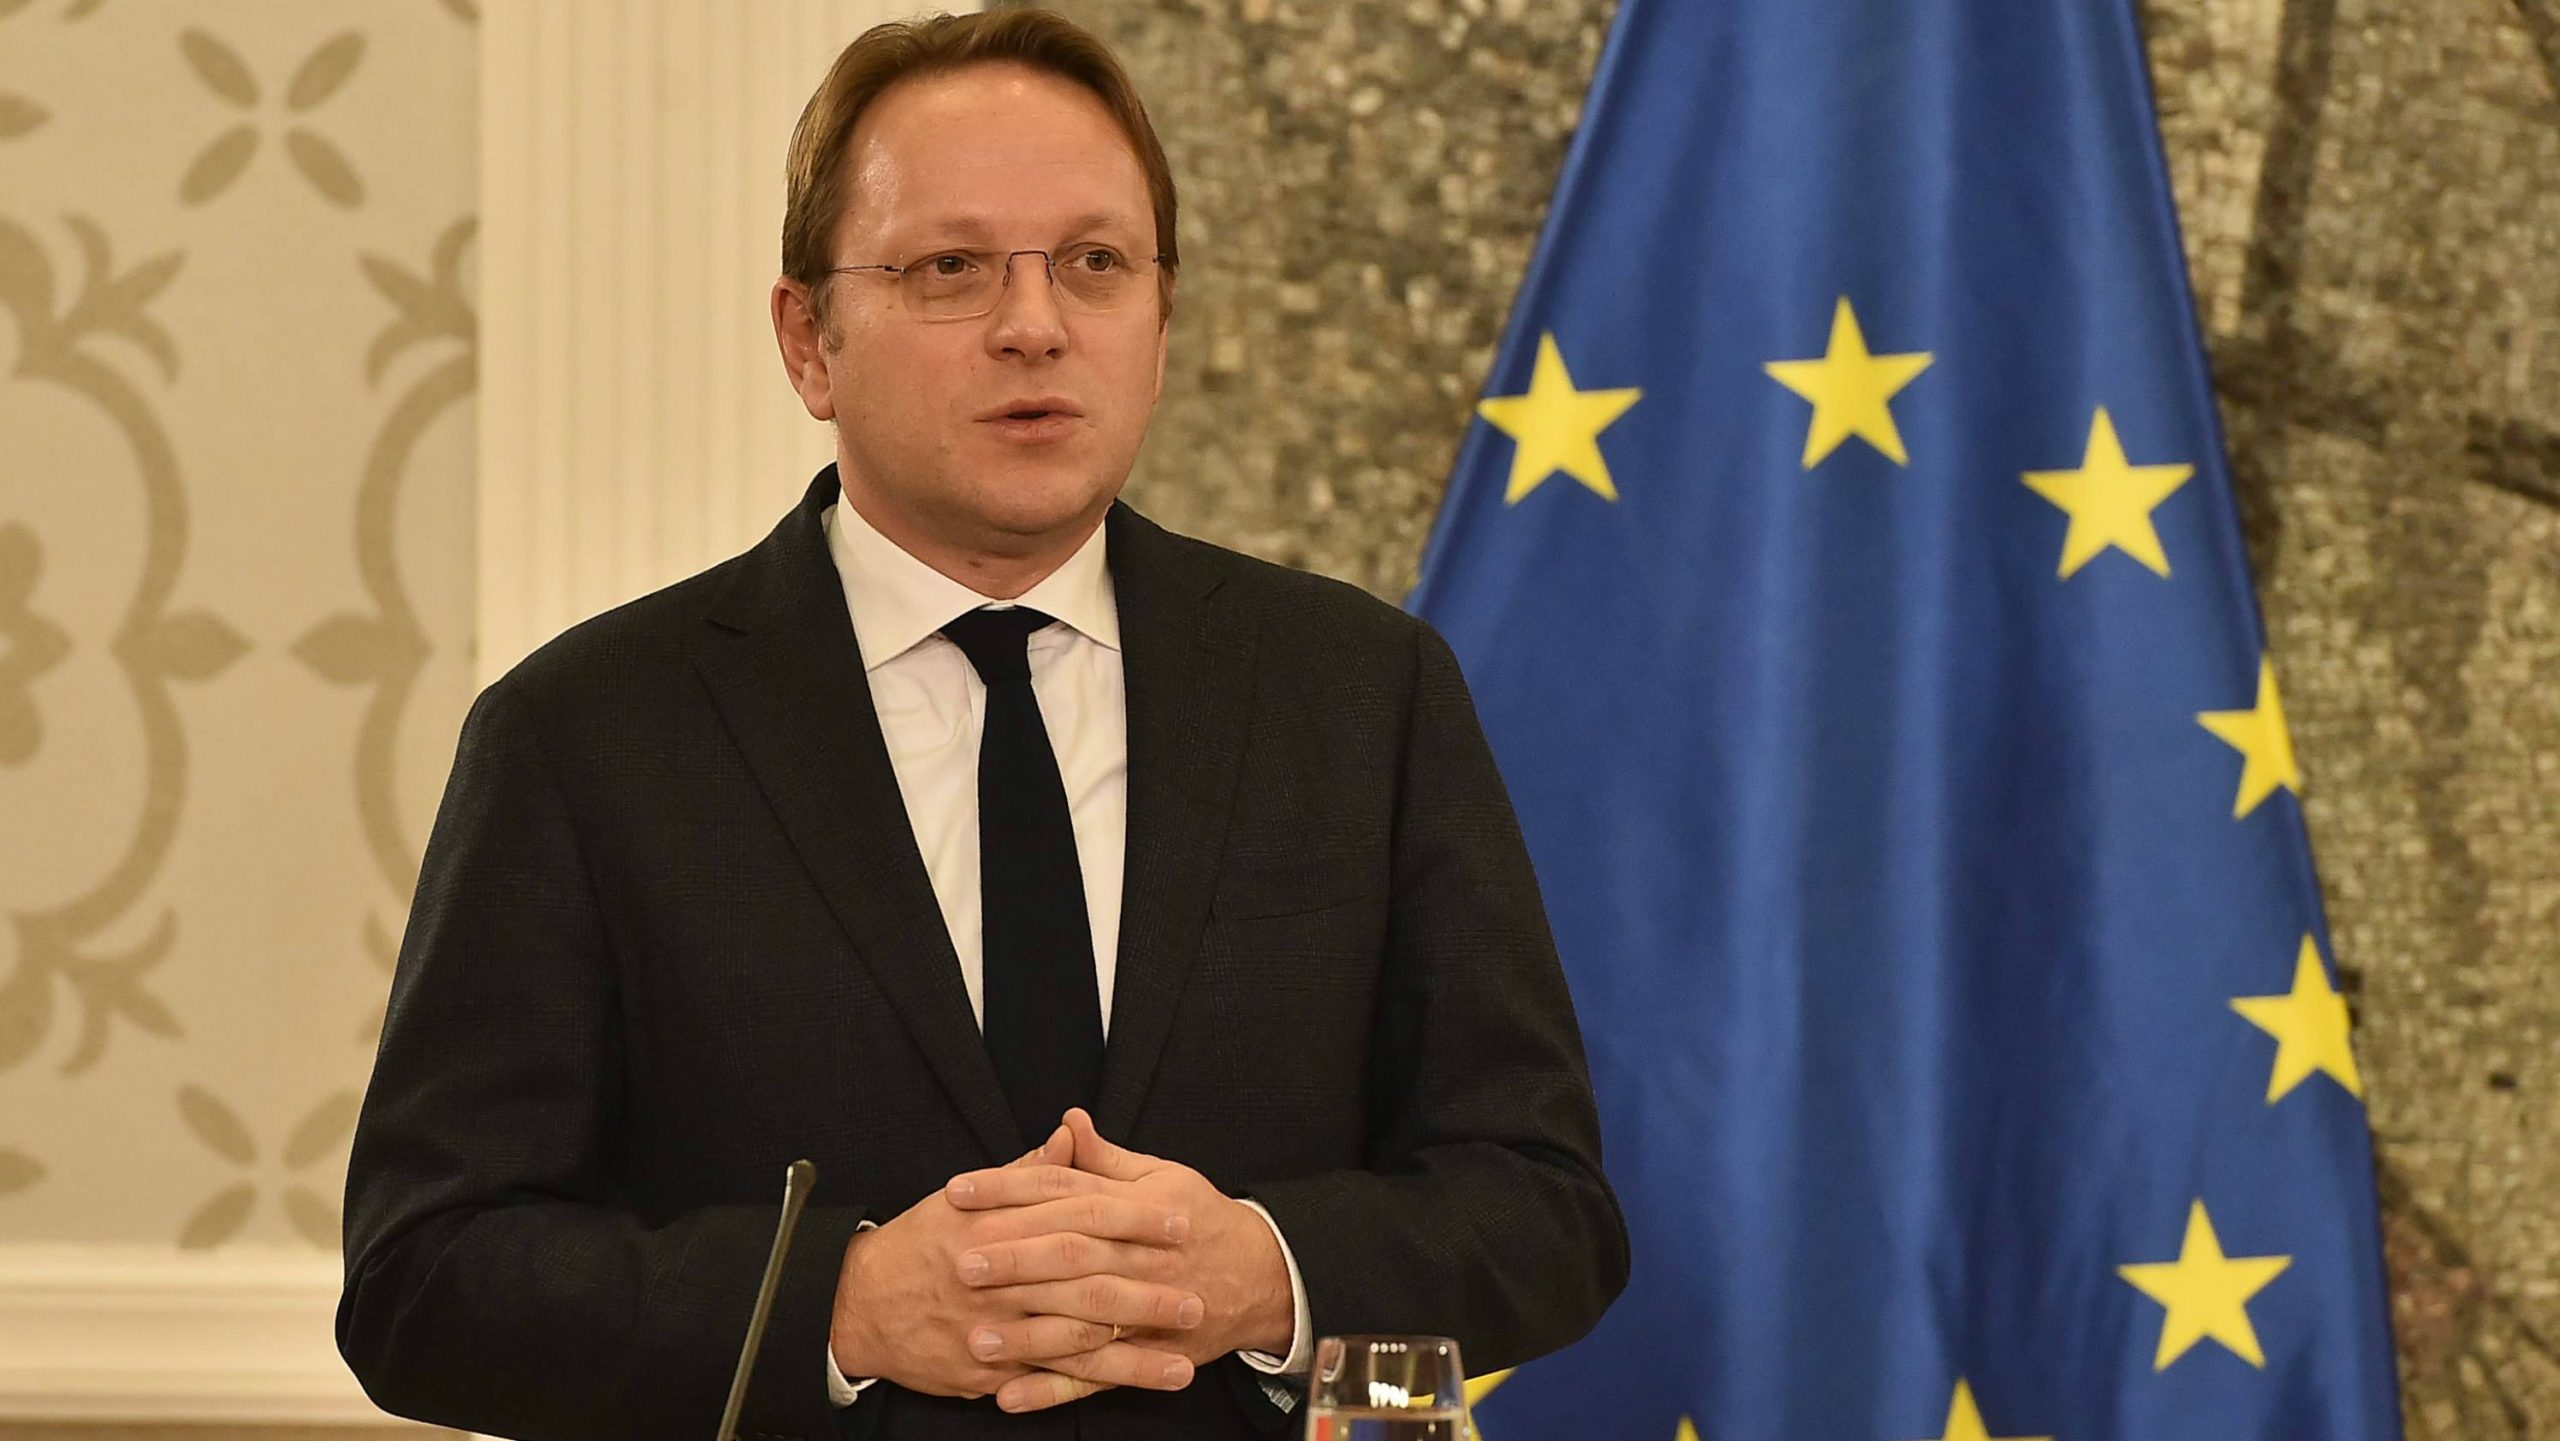 Varheji: Za napredak Srbije ka EU potreban istinski dijalog i hitno jačanje vladavine prava 1